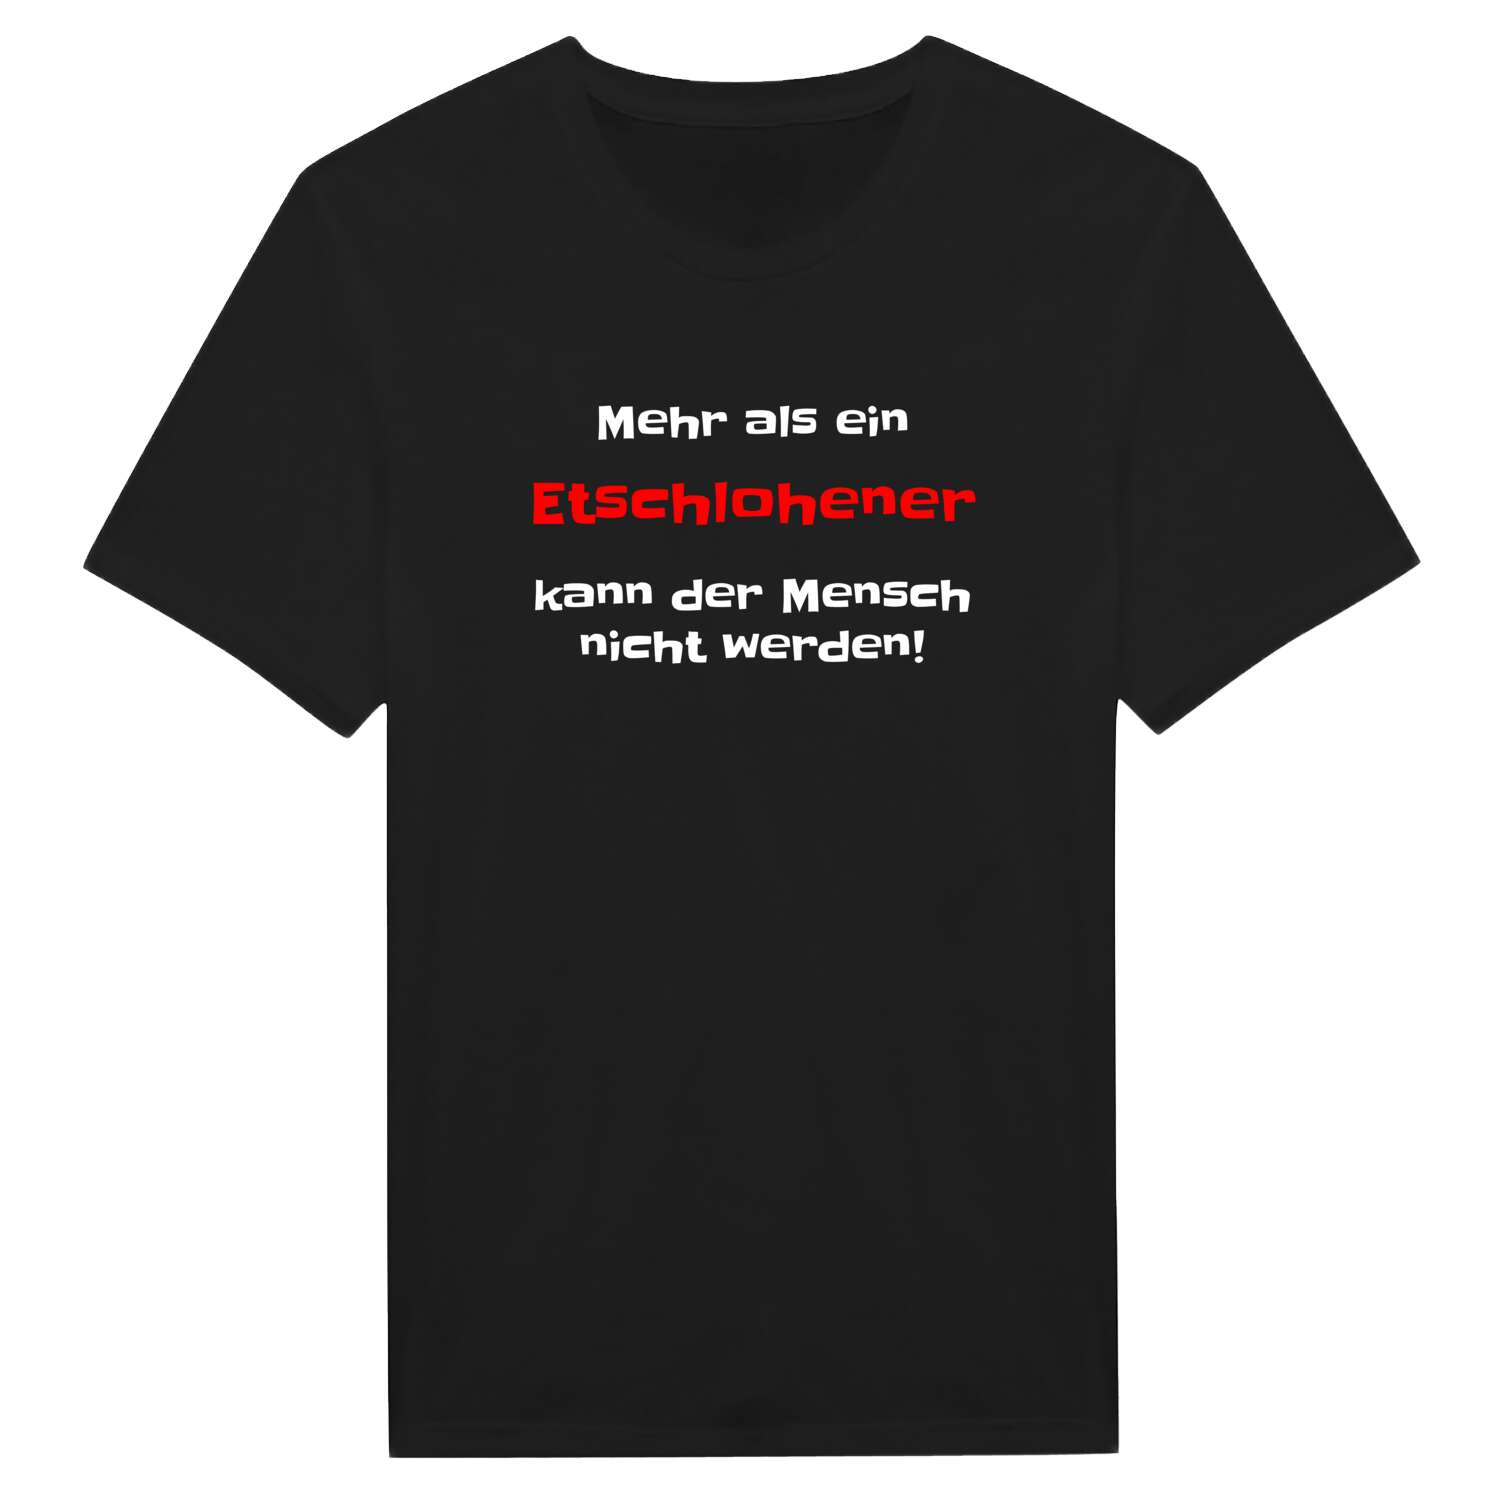 Etschlohe T-Shirt »Mehr als ein«